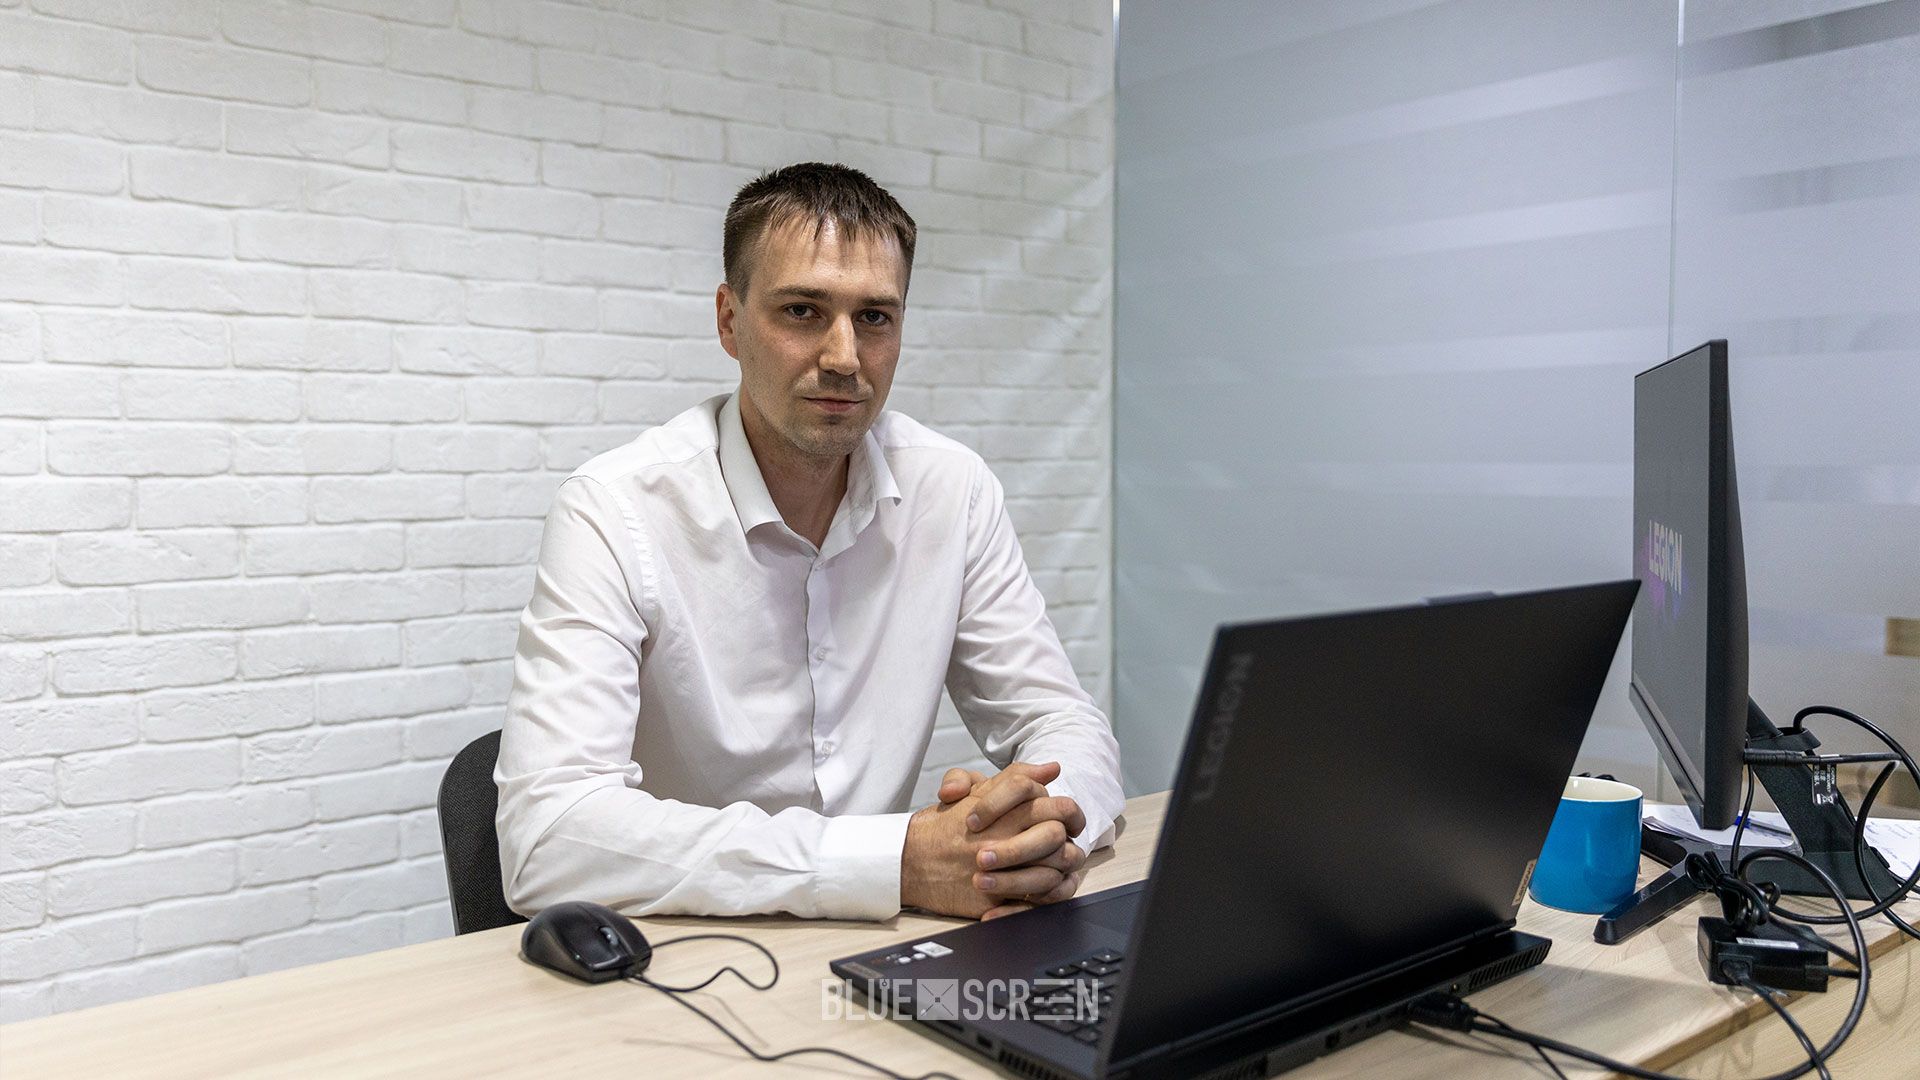  Алексей Кодубец, директор и автор проекта Suretter Software.